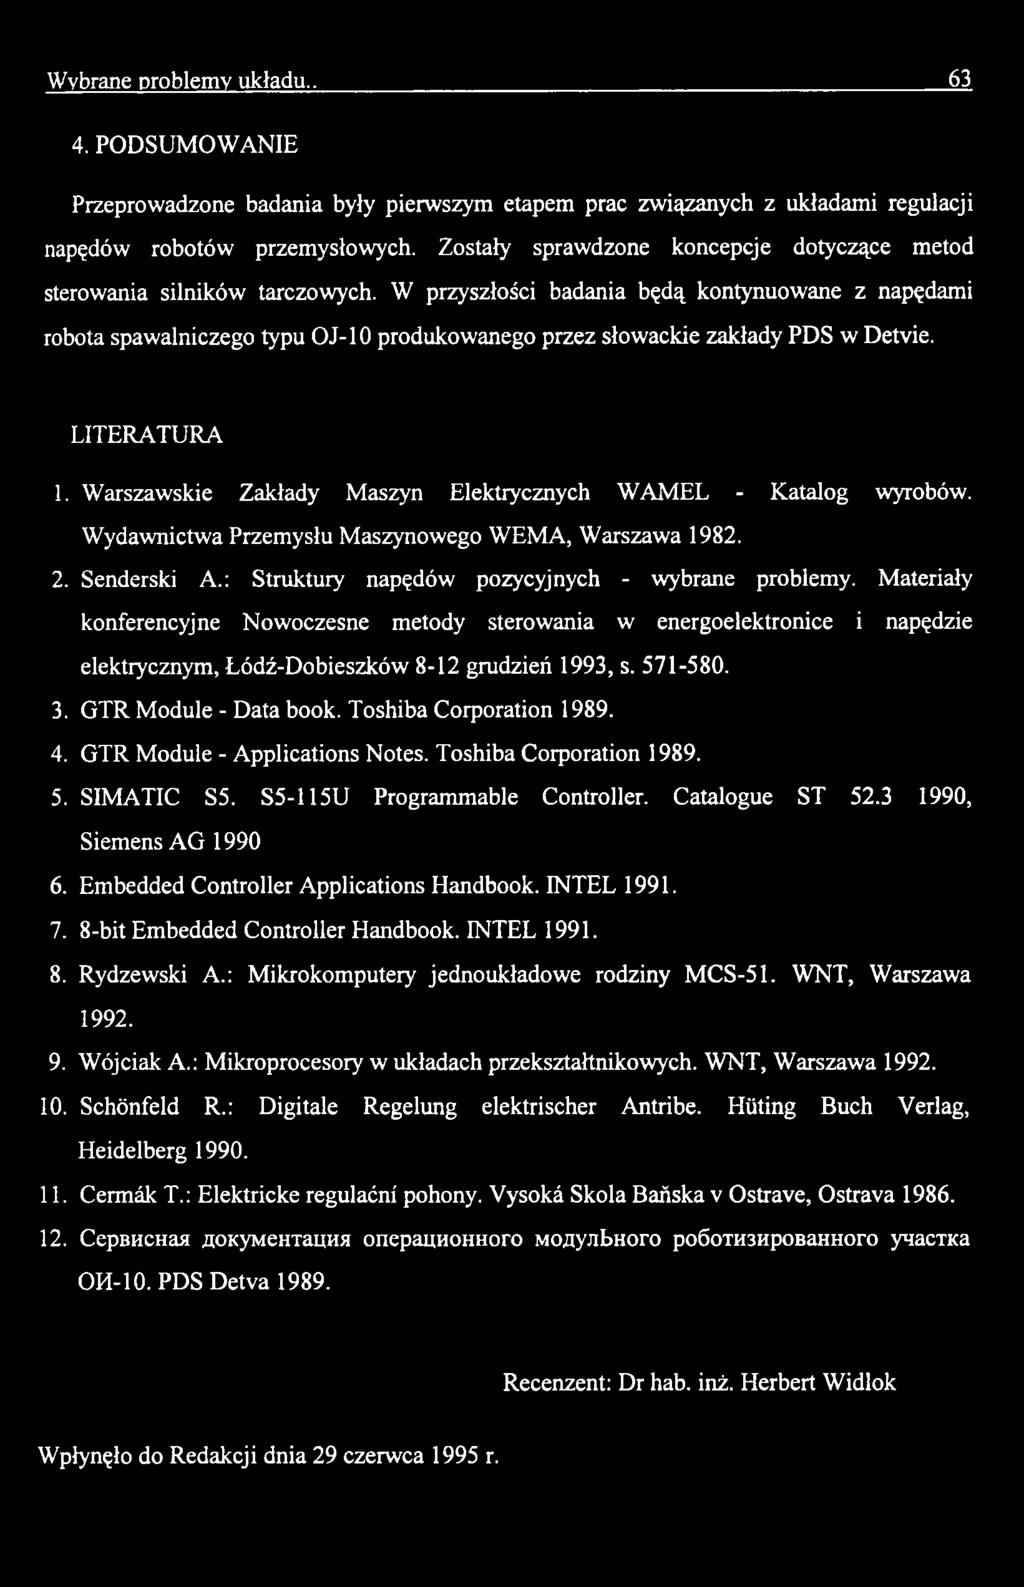 Materiały konferencyjne Nowoczesne metody sterowania w energoelektronice i napędzie elektrycznym, Łódź-Dobieszków 8-12 grudzień 1993, s. 571-580. 3. GTR Module - Data book. Toshiba Corporation 1989.